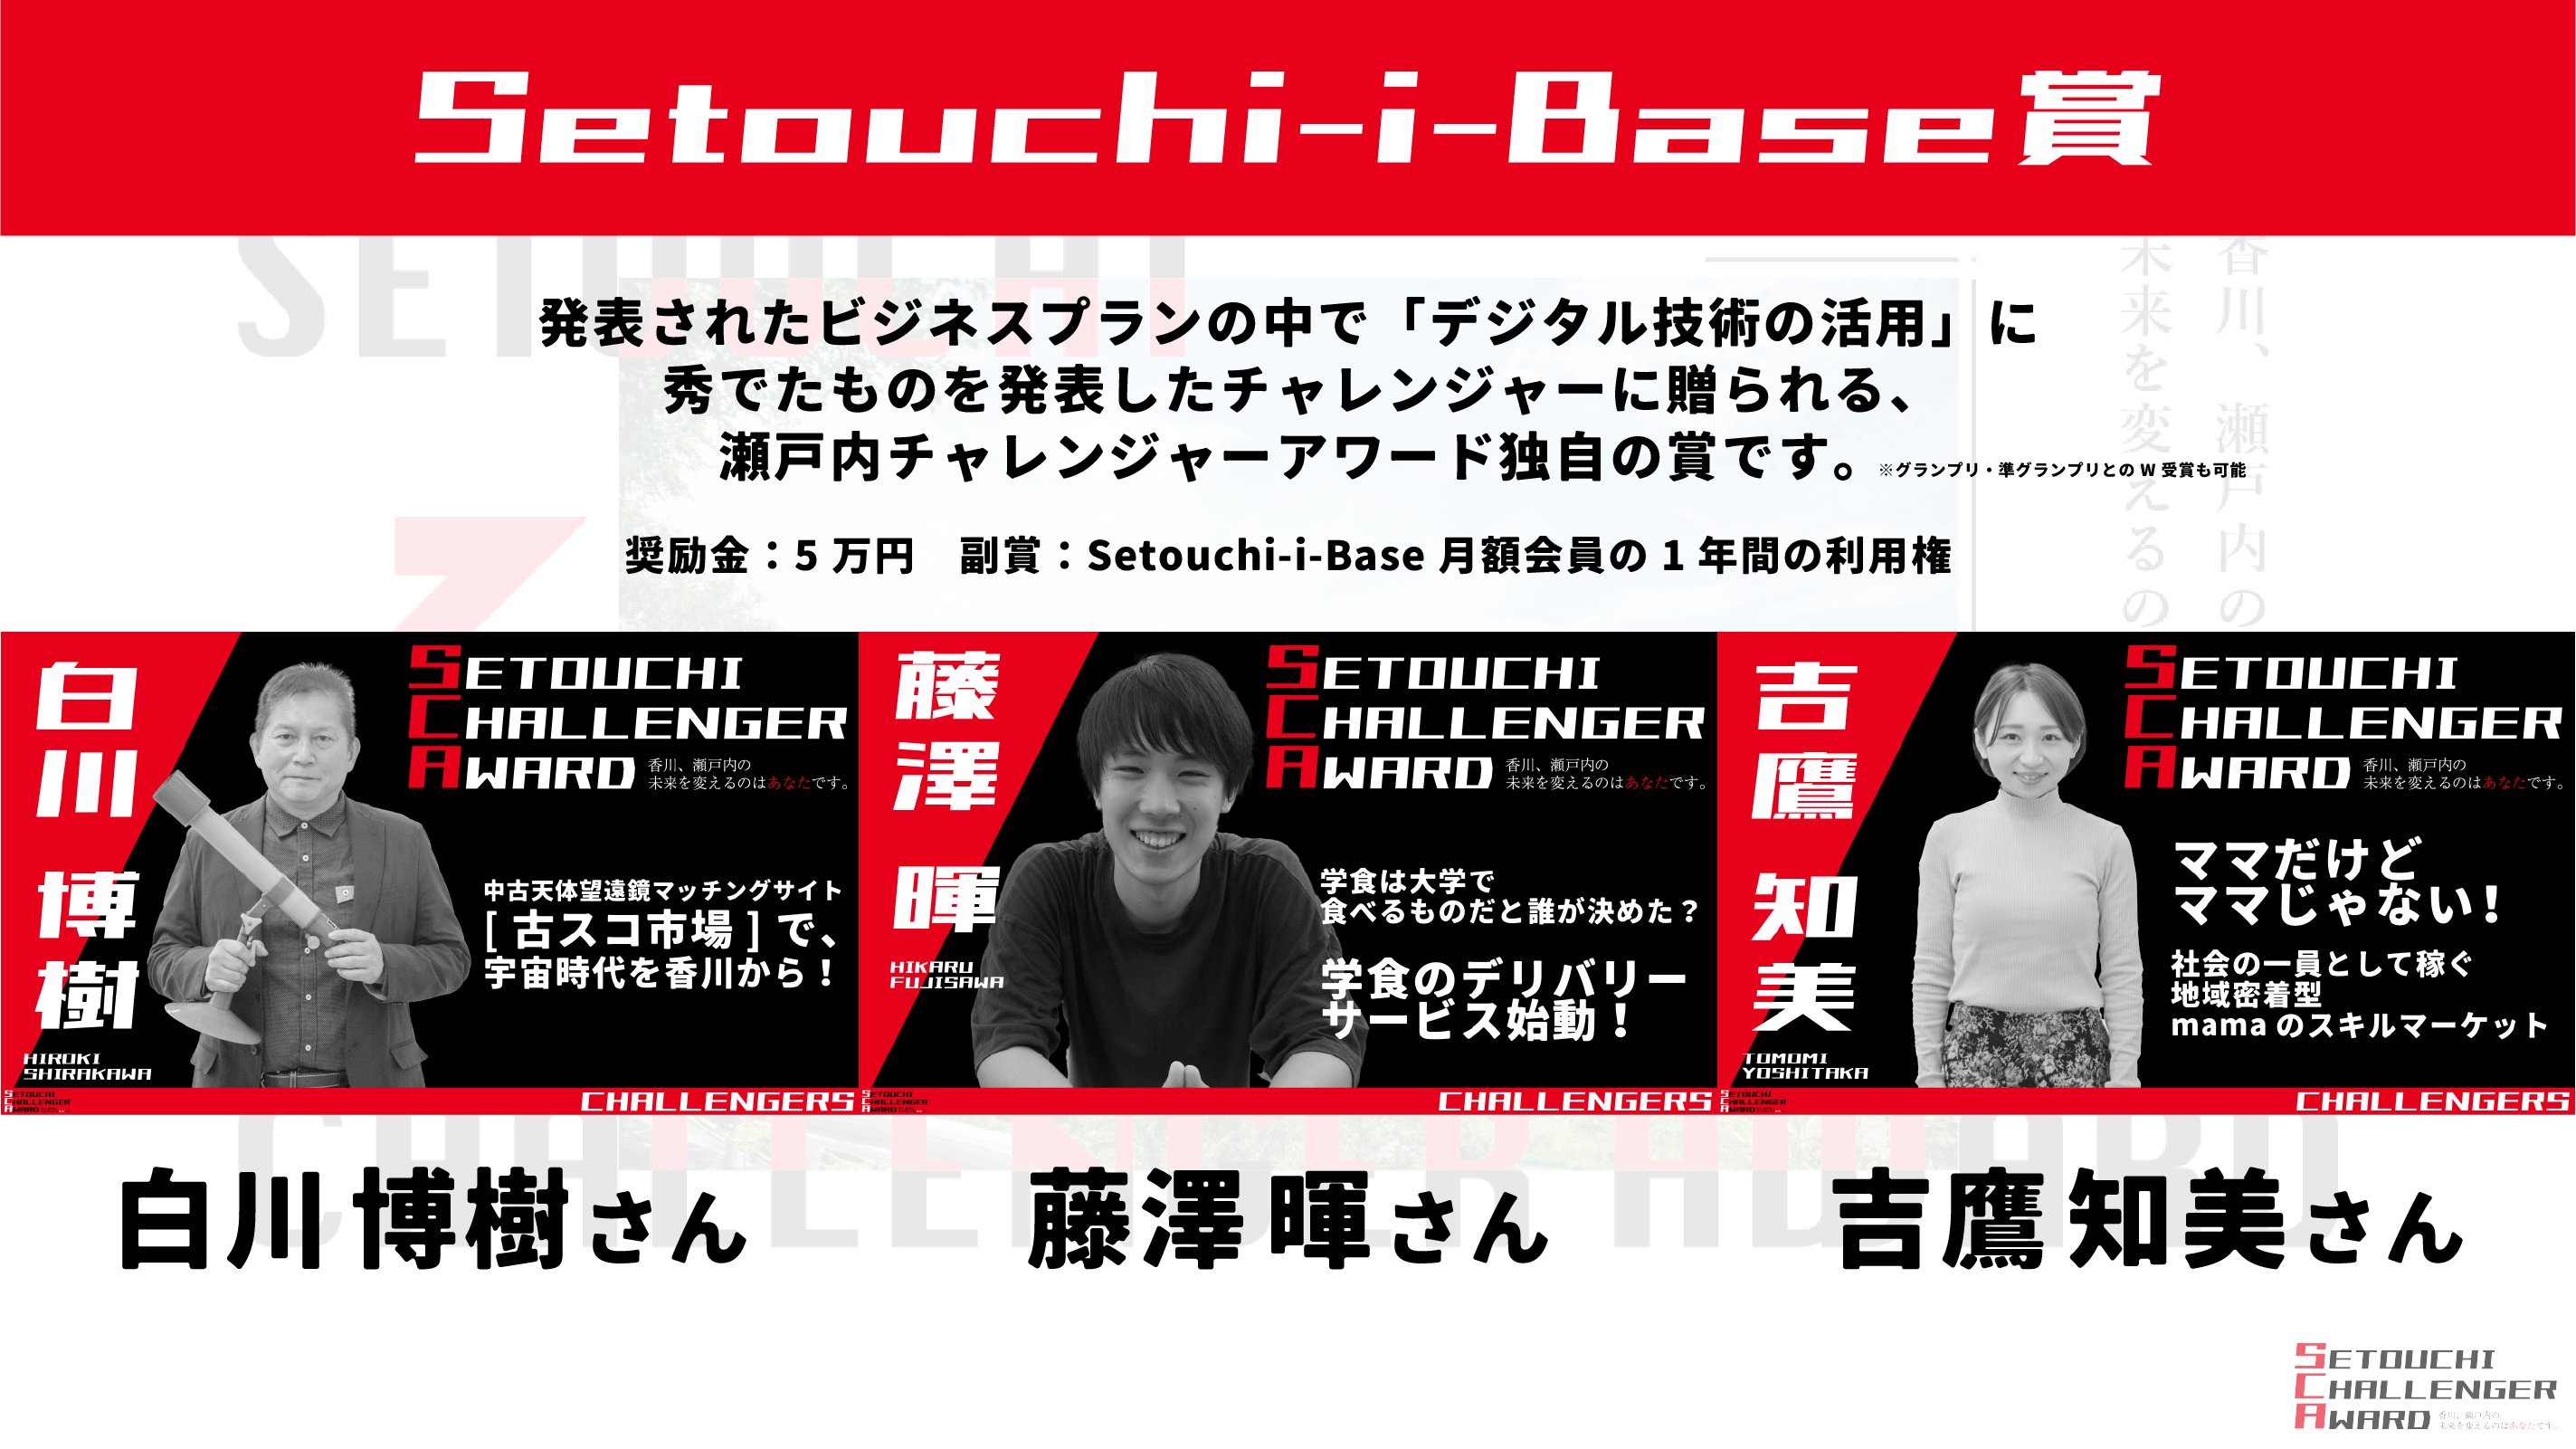 Setouchi-i-Base賞